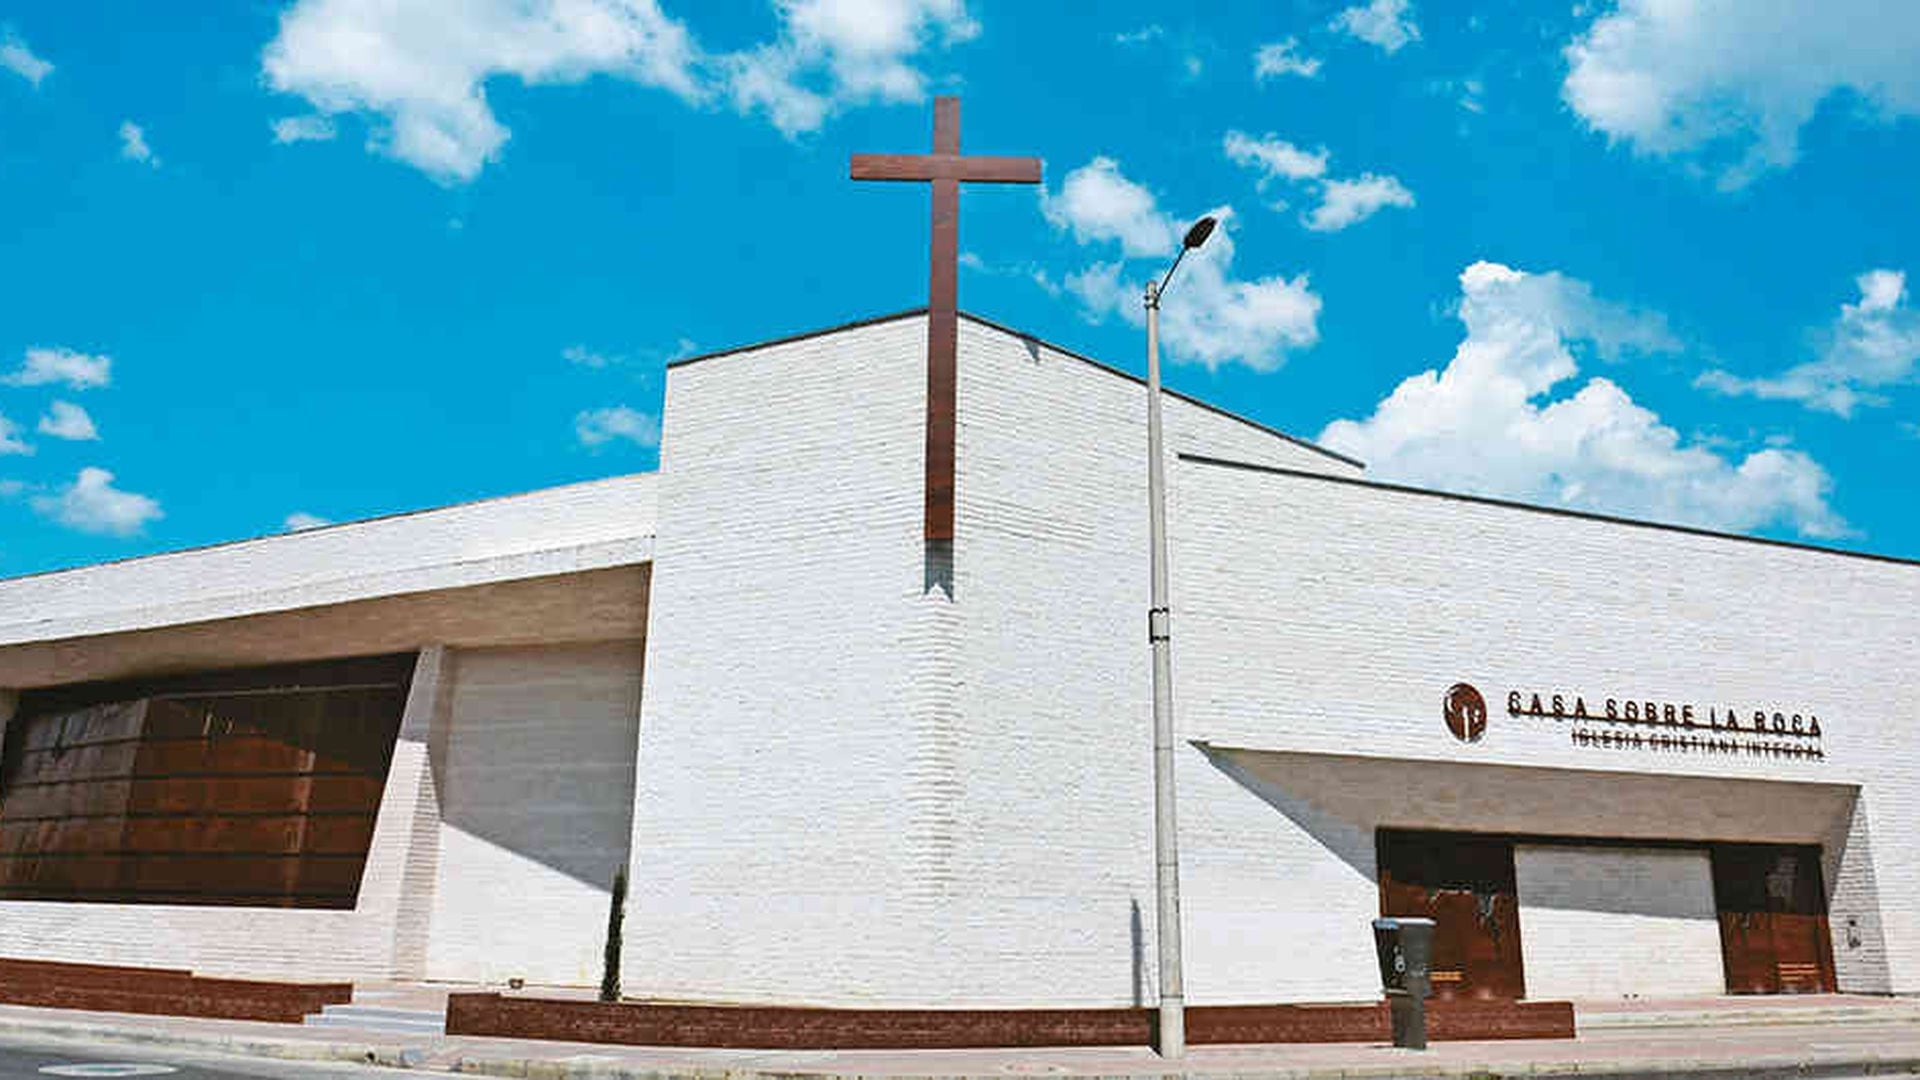 Iglesia cristiana Casa sobre la Roca y su impacto en Bogota